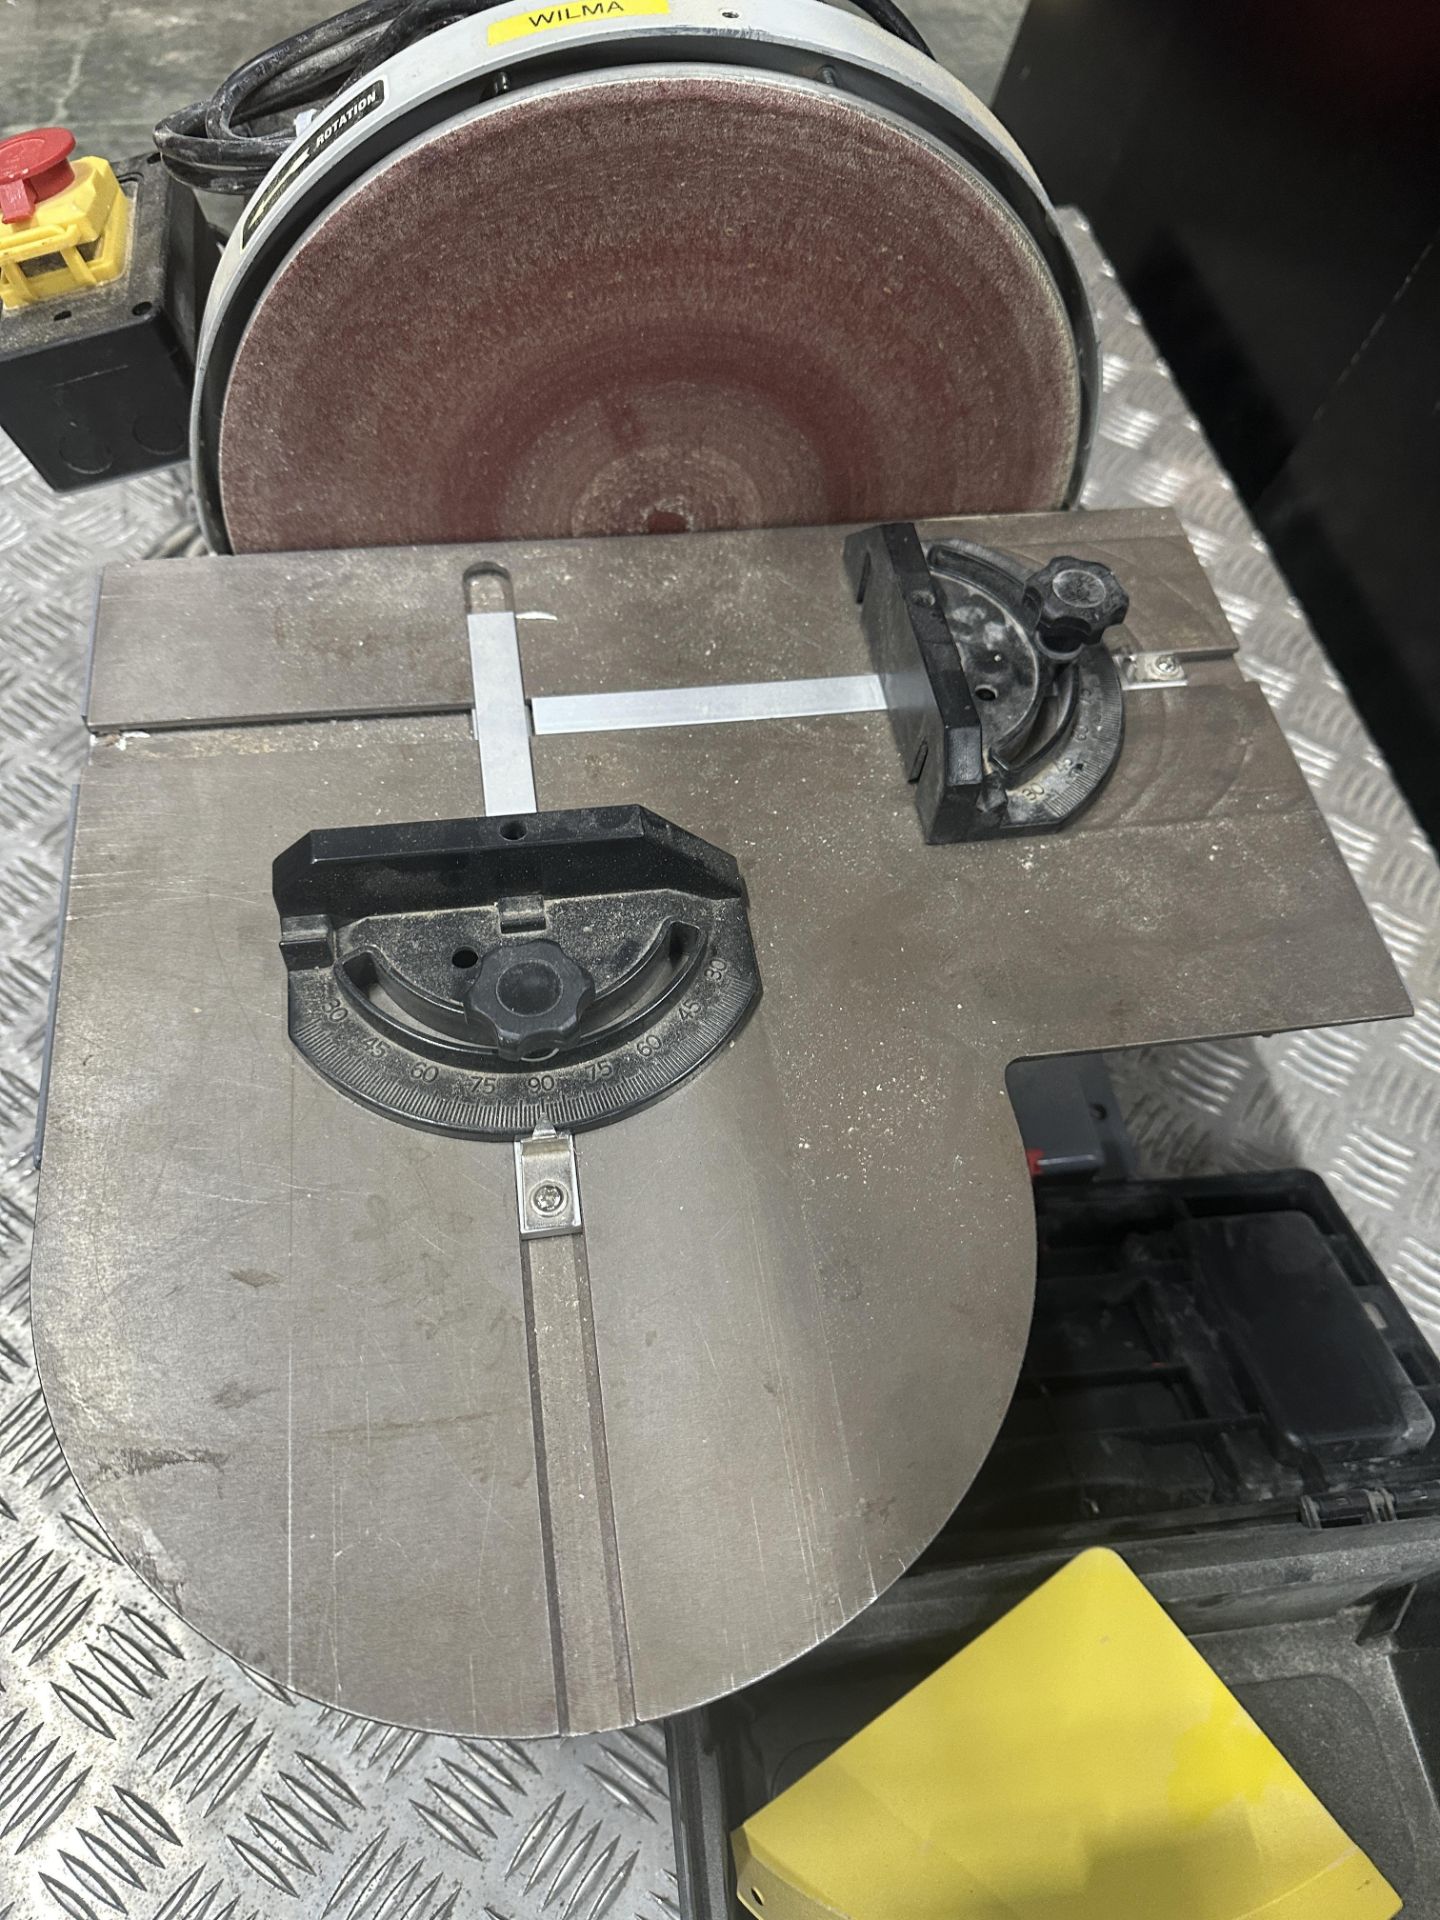 Axminster disc sander - Image 3 of 3